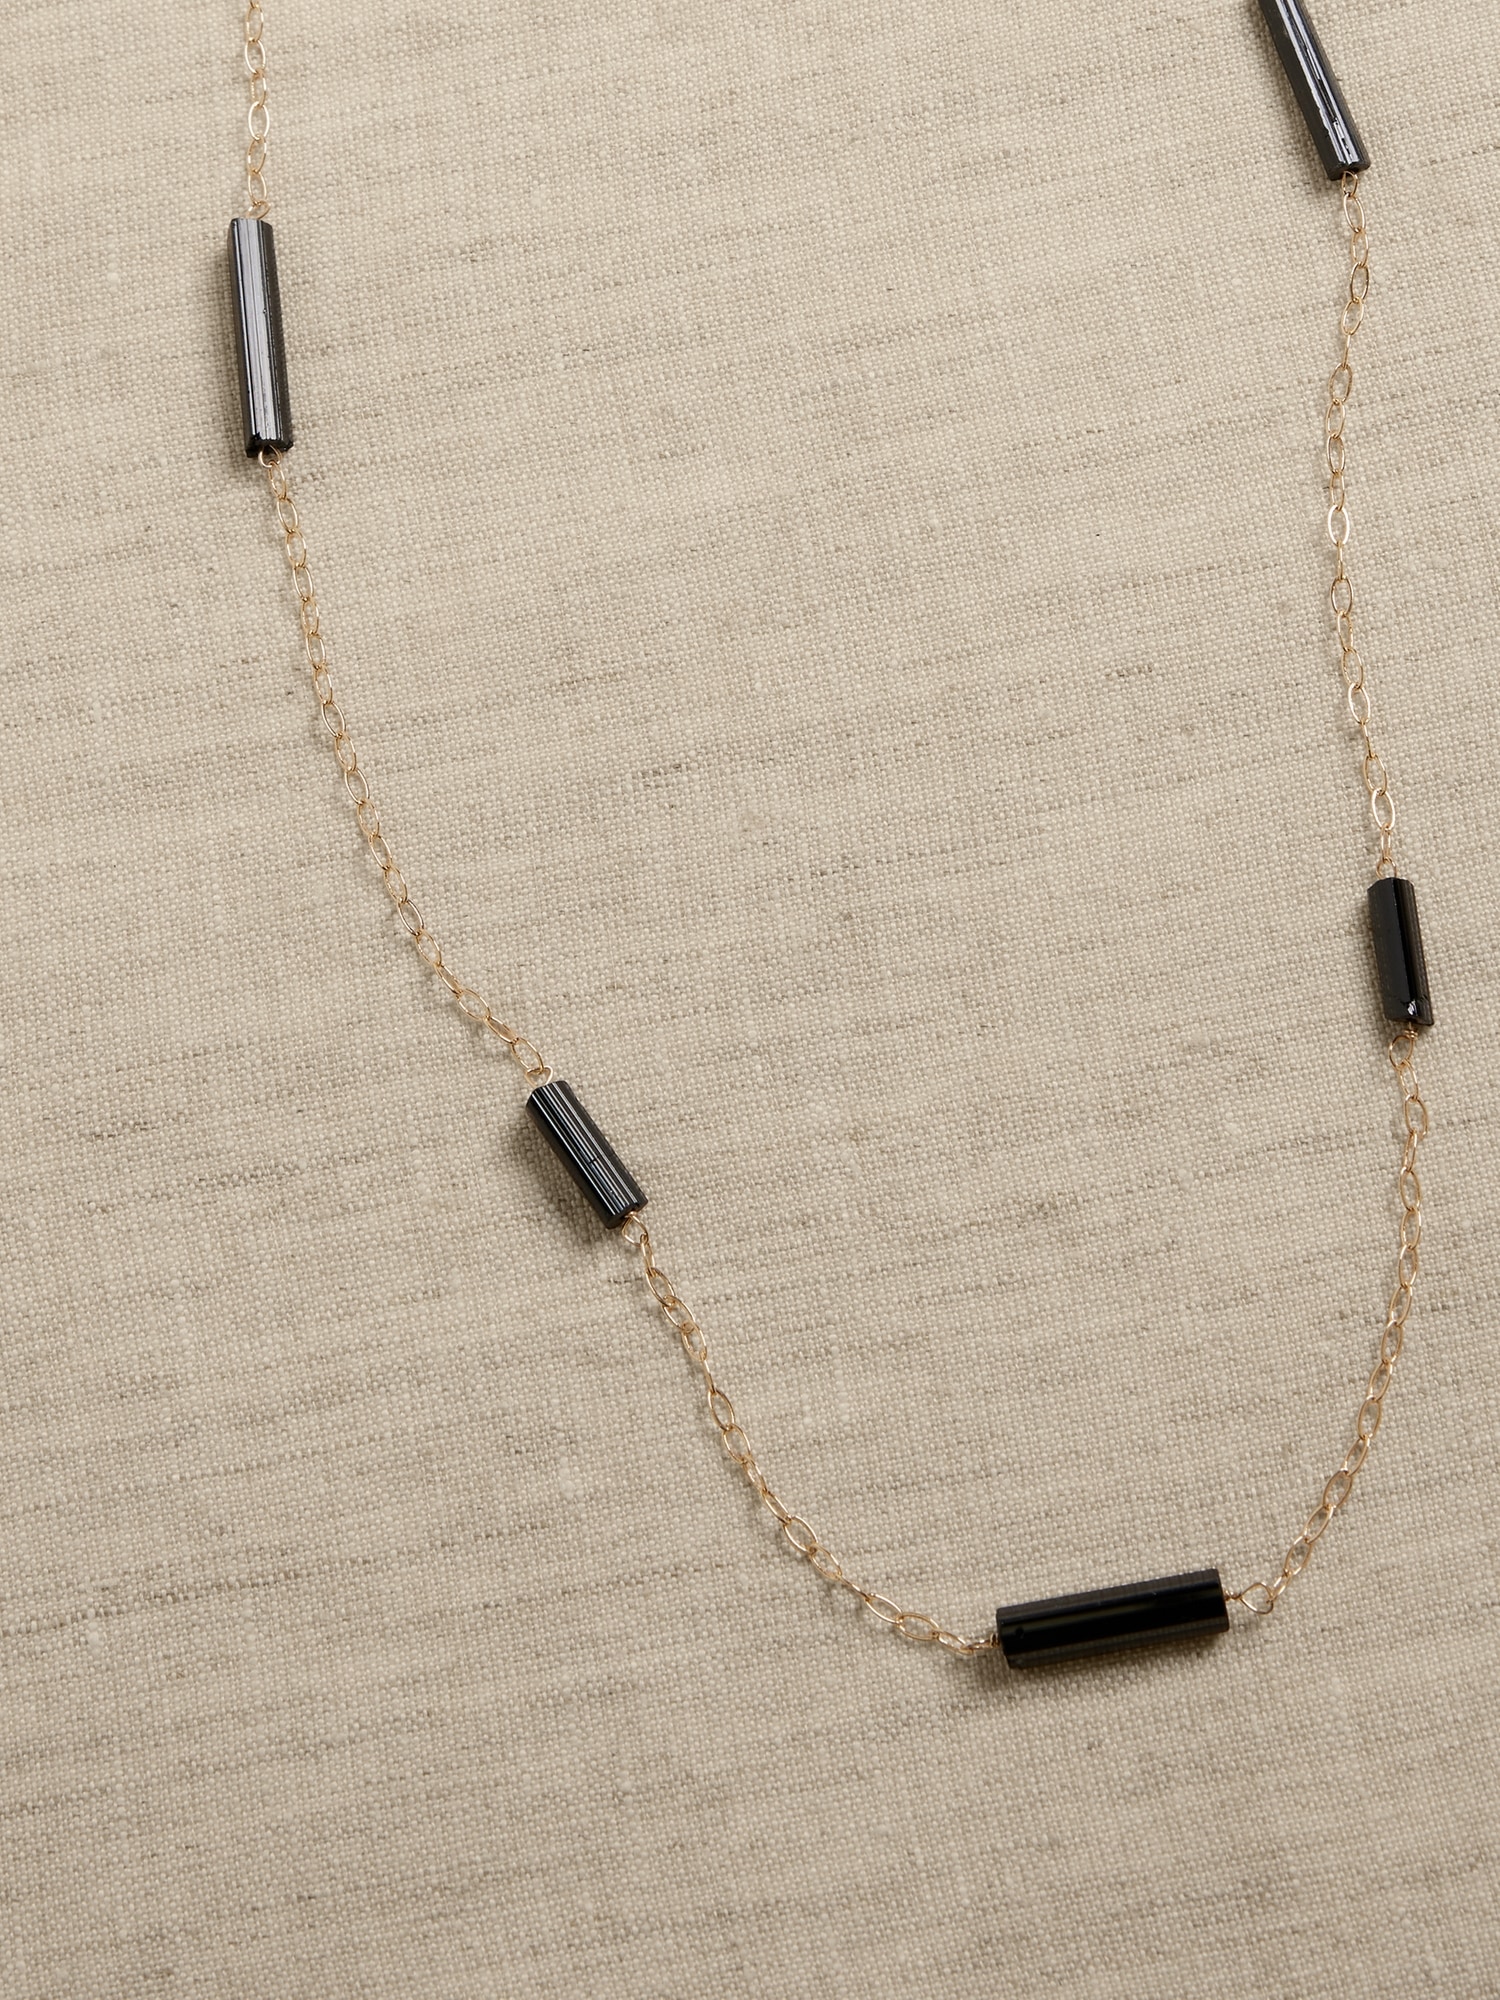 Black Tourmaline Crystal Chain Necklace | Aureus + Argent